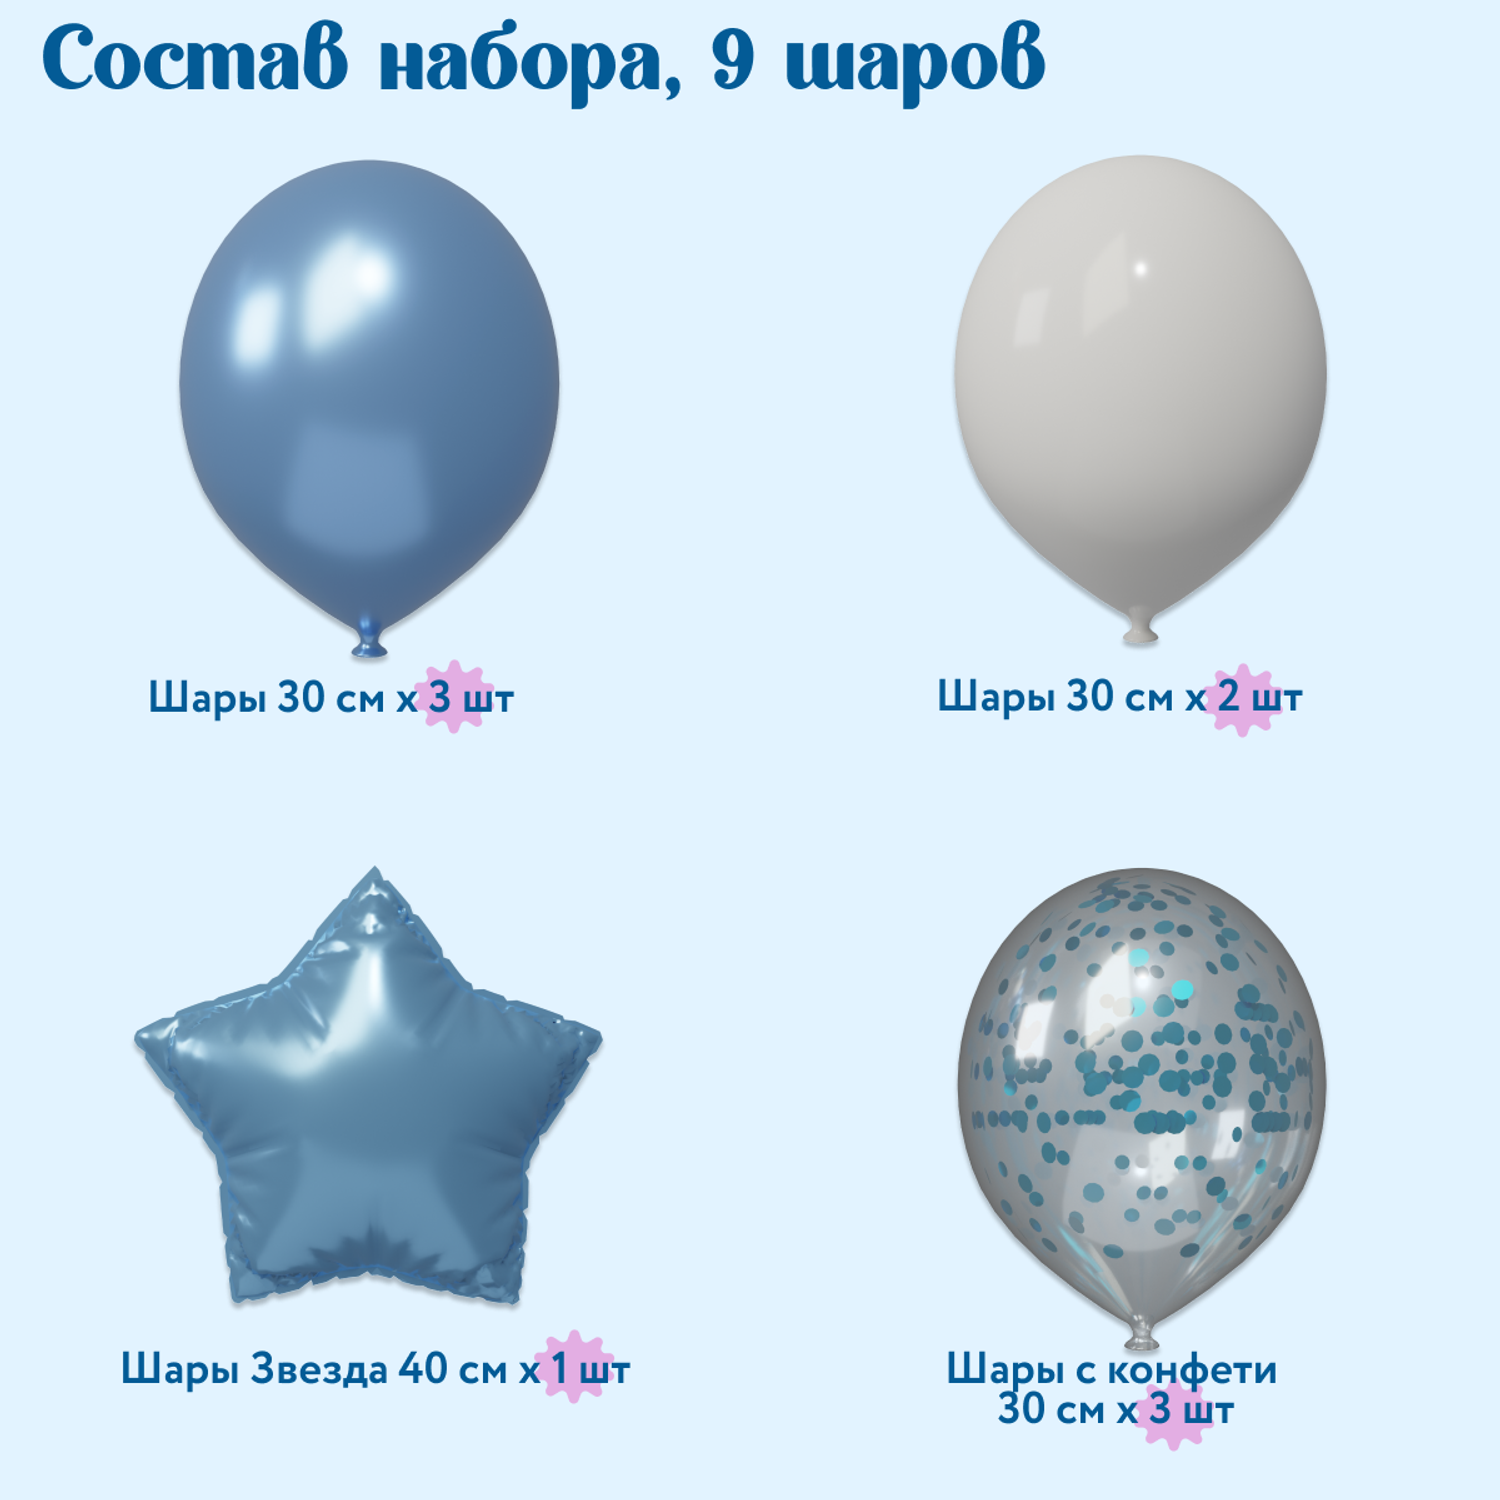 Фонтан из воздушных шаров Мишины шарики Набор для праздничного оформления детского дня рождения - фото 2